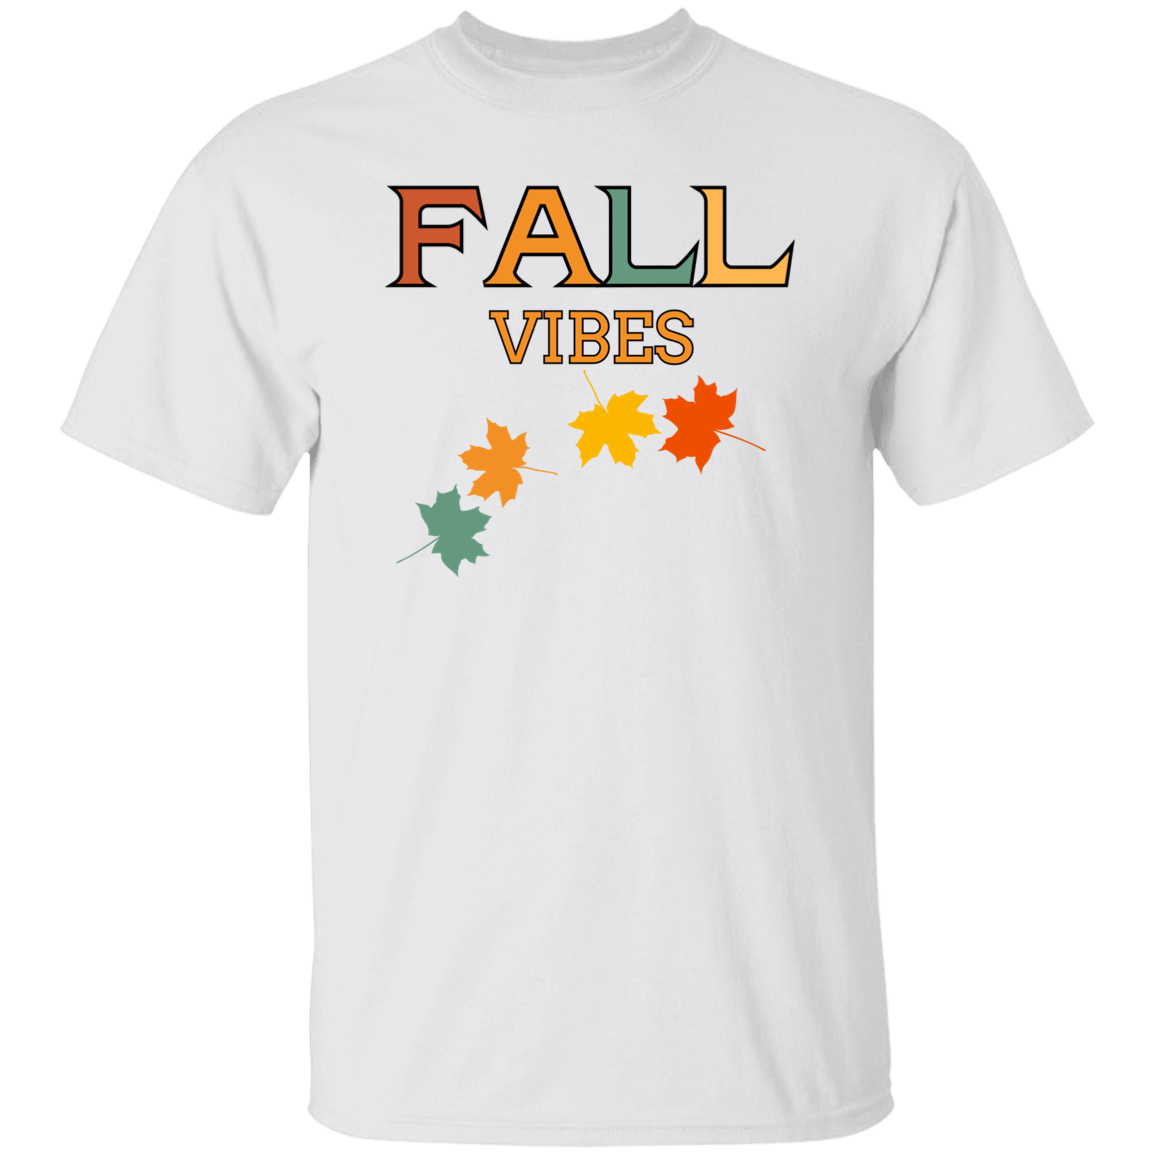 Vibraciones de otoño - Camiseta unisex